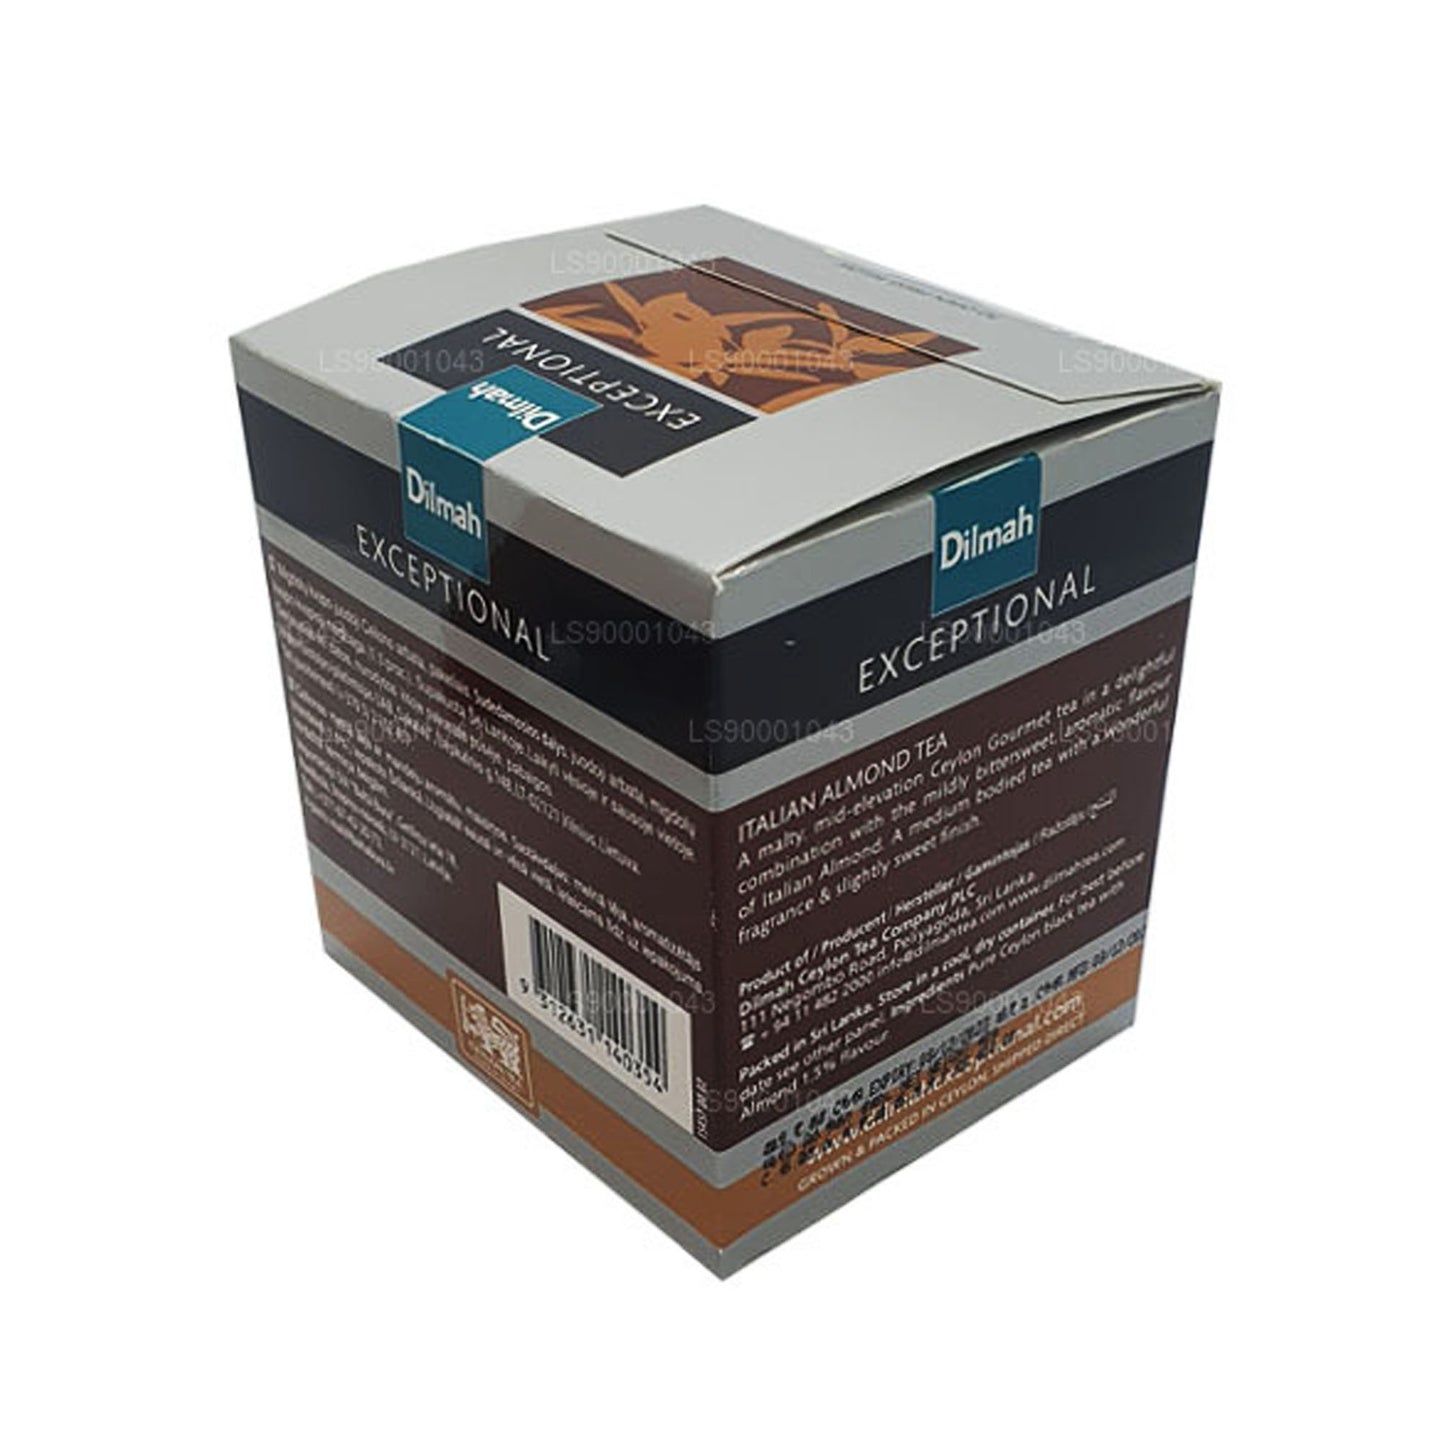 Dilmah Exceptional Italian Almond Real Leaf Tea (40 g) 20 Teebeutel